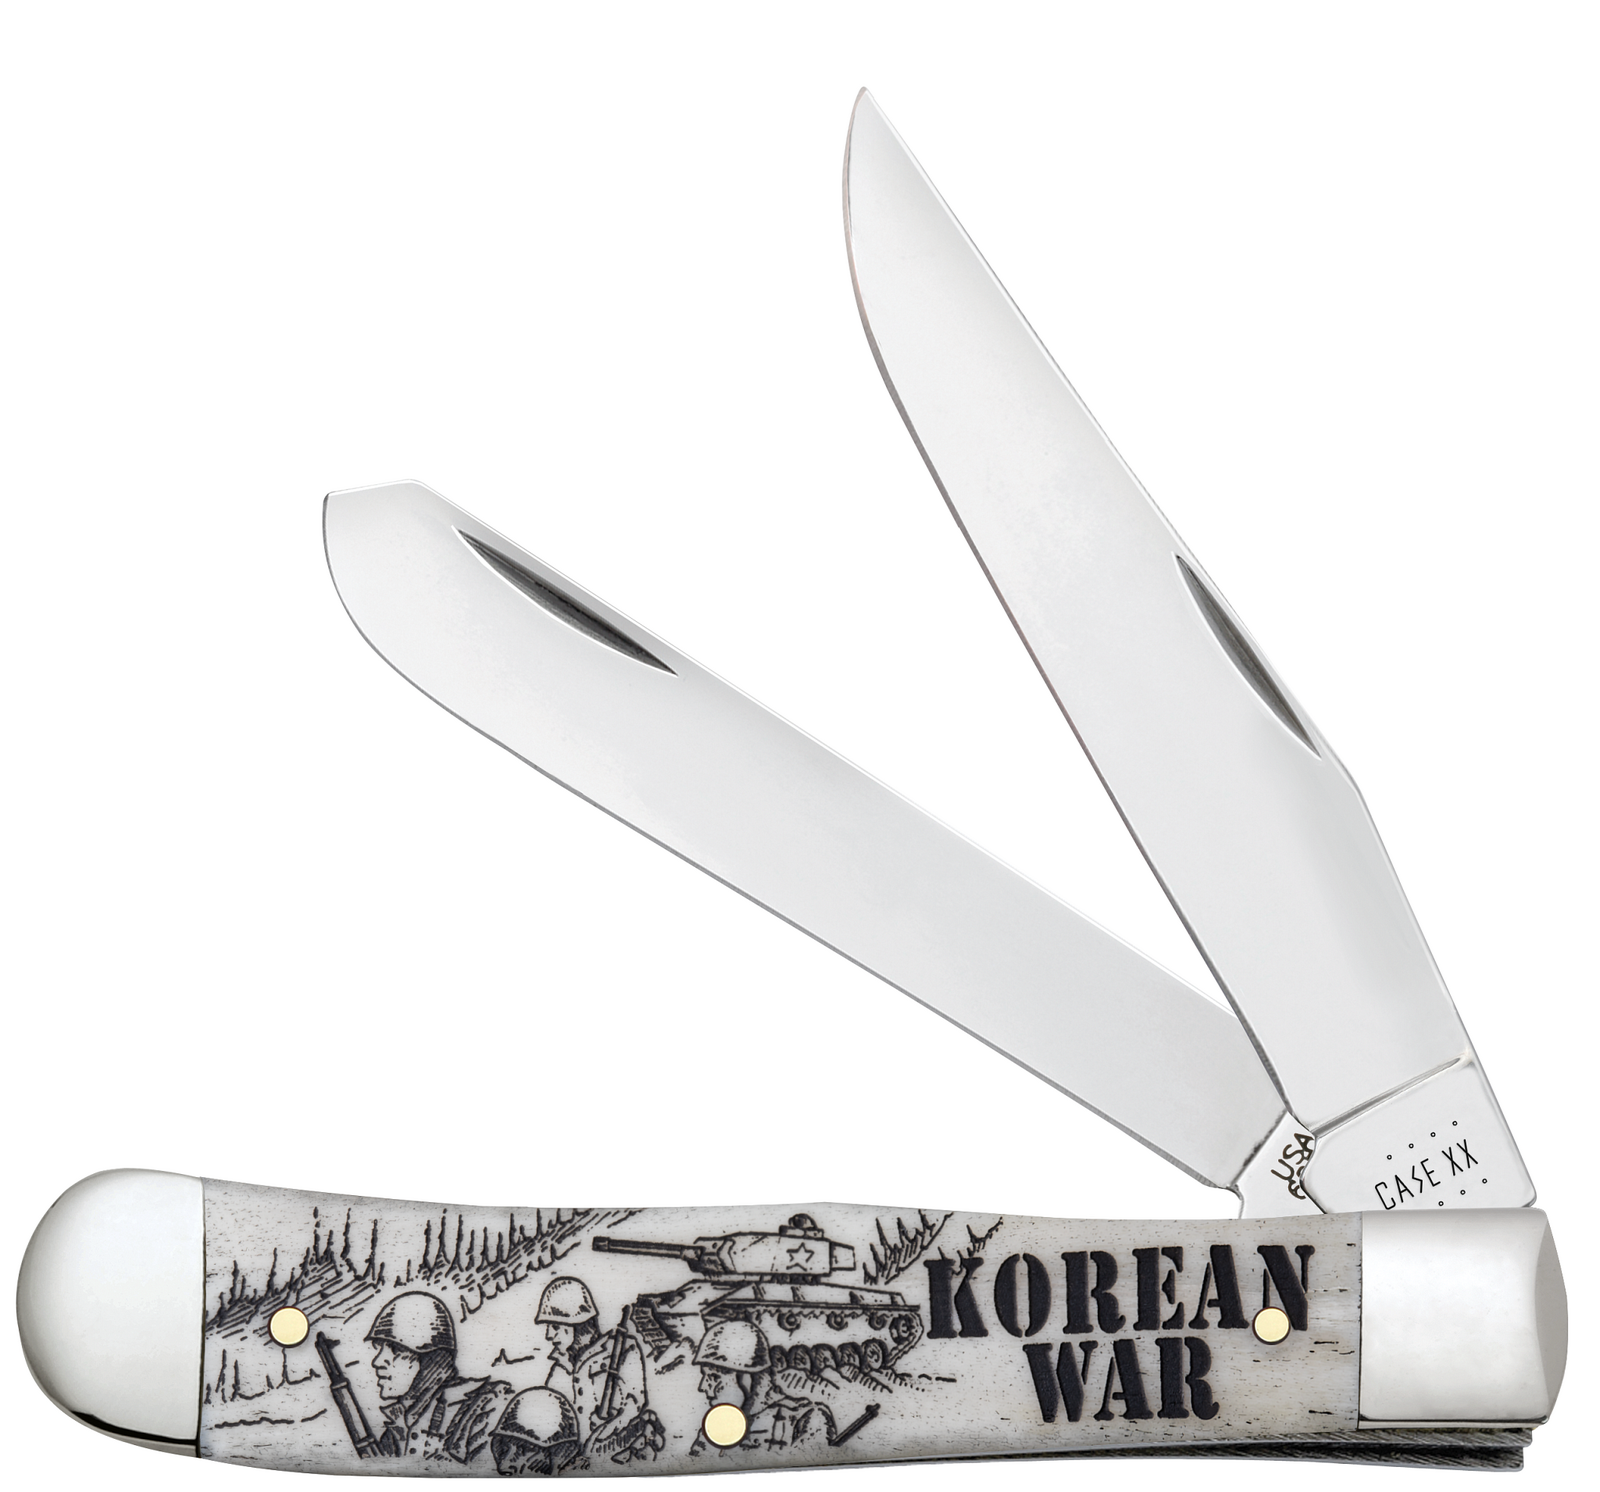 Case War Series Korean War Embellished Smooth Natural Bone (SS) Large Trapper Folder Knife #50951